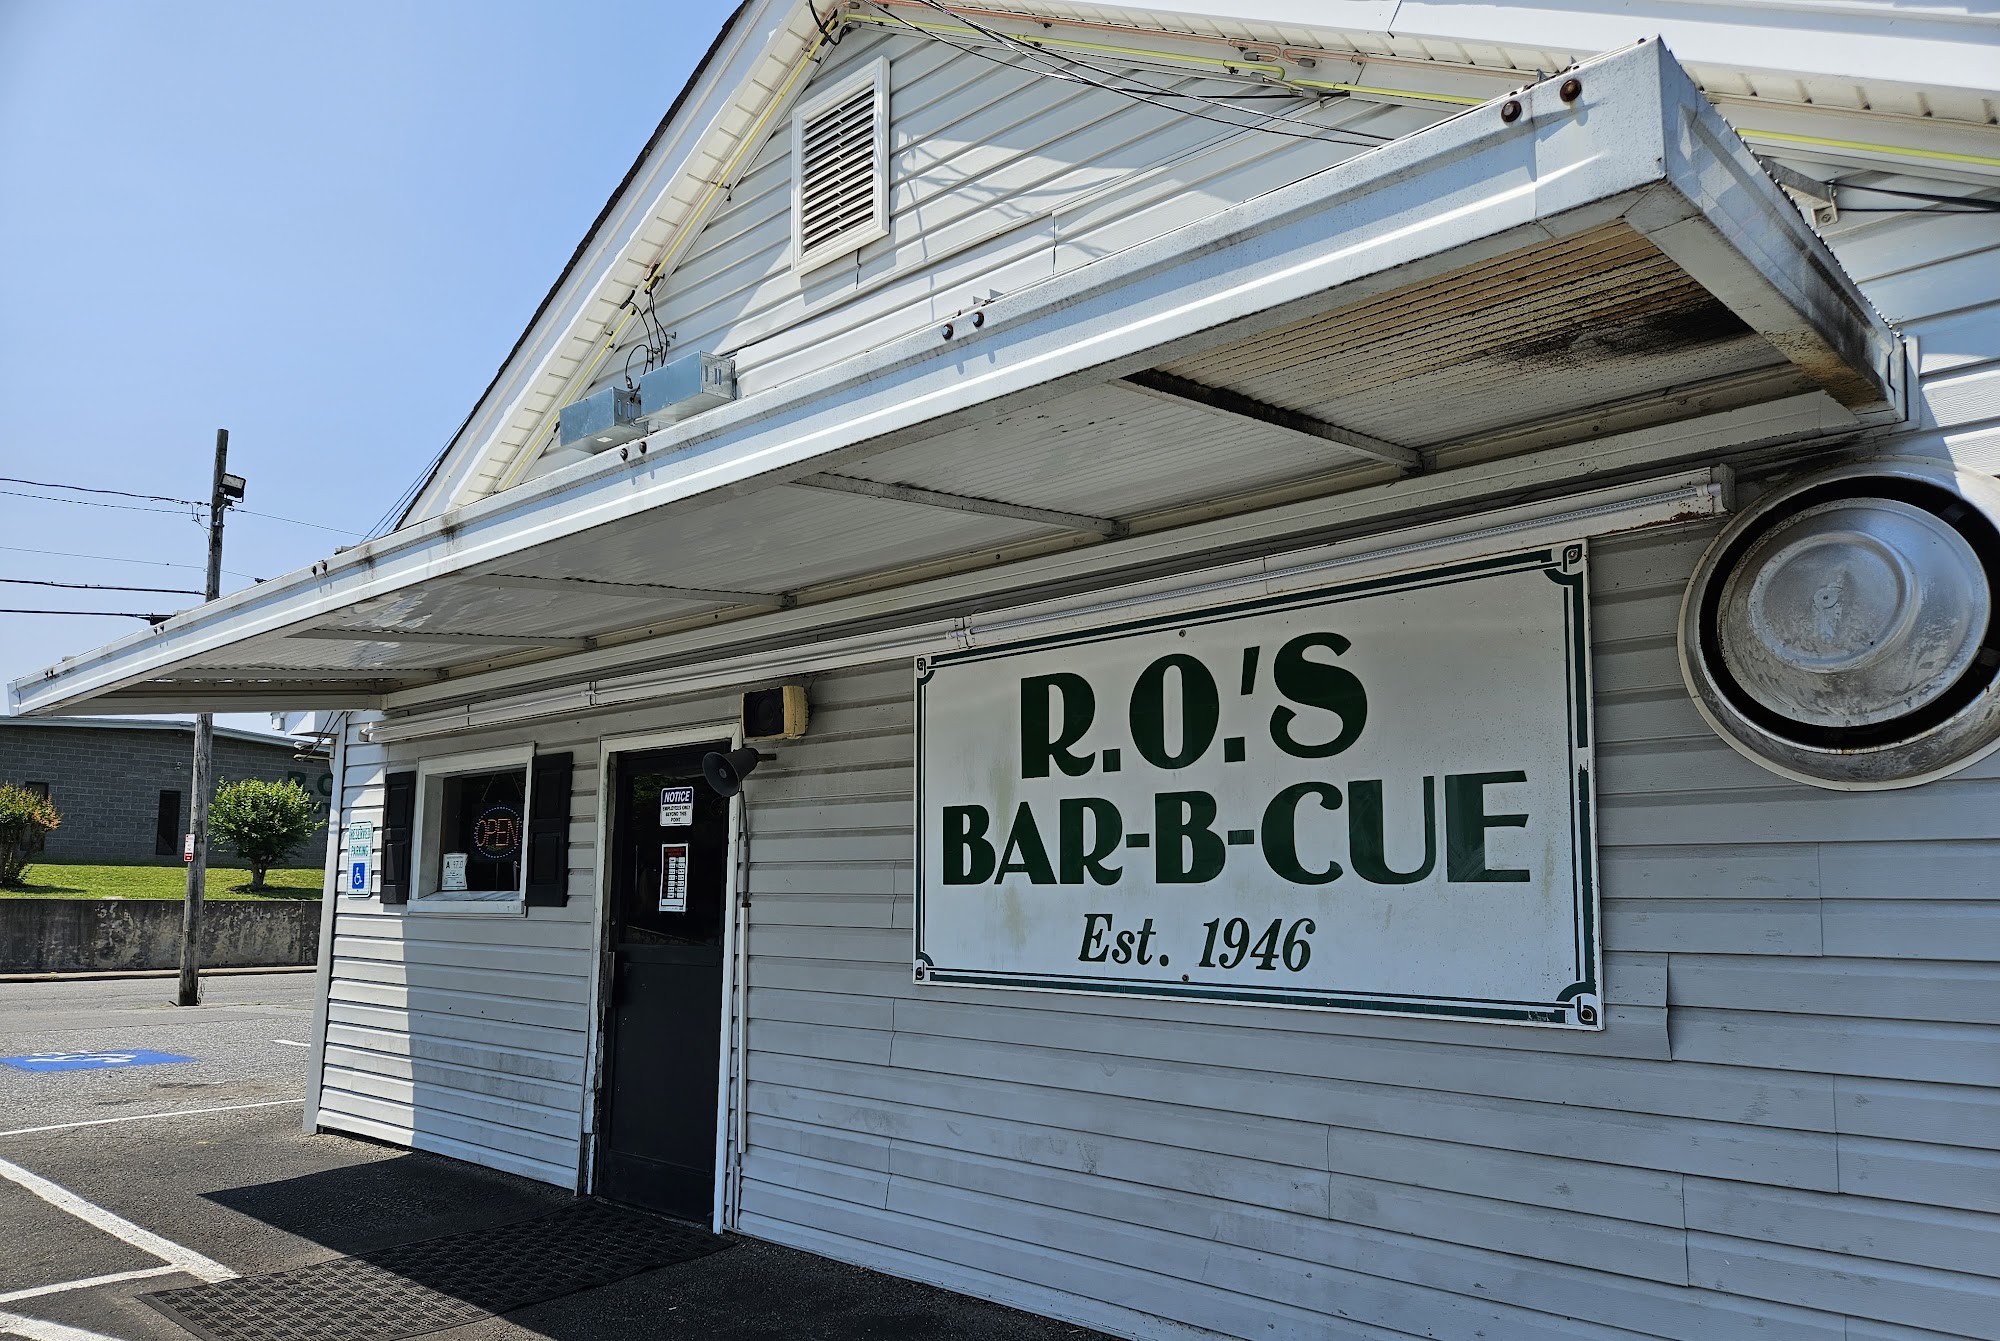 R.O.'s Bar-B-Cue